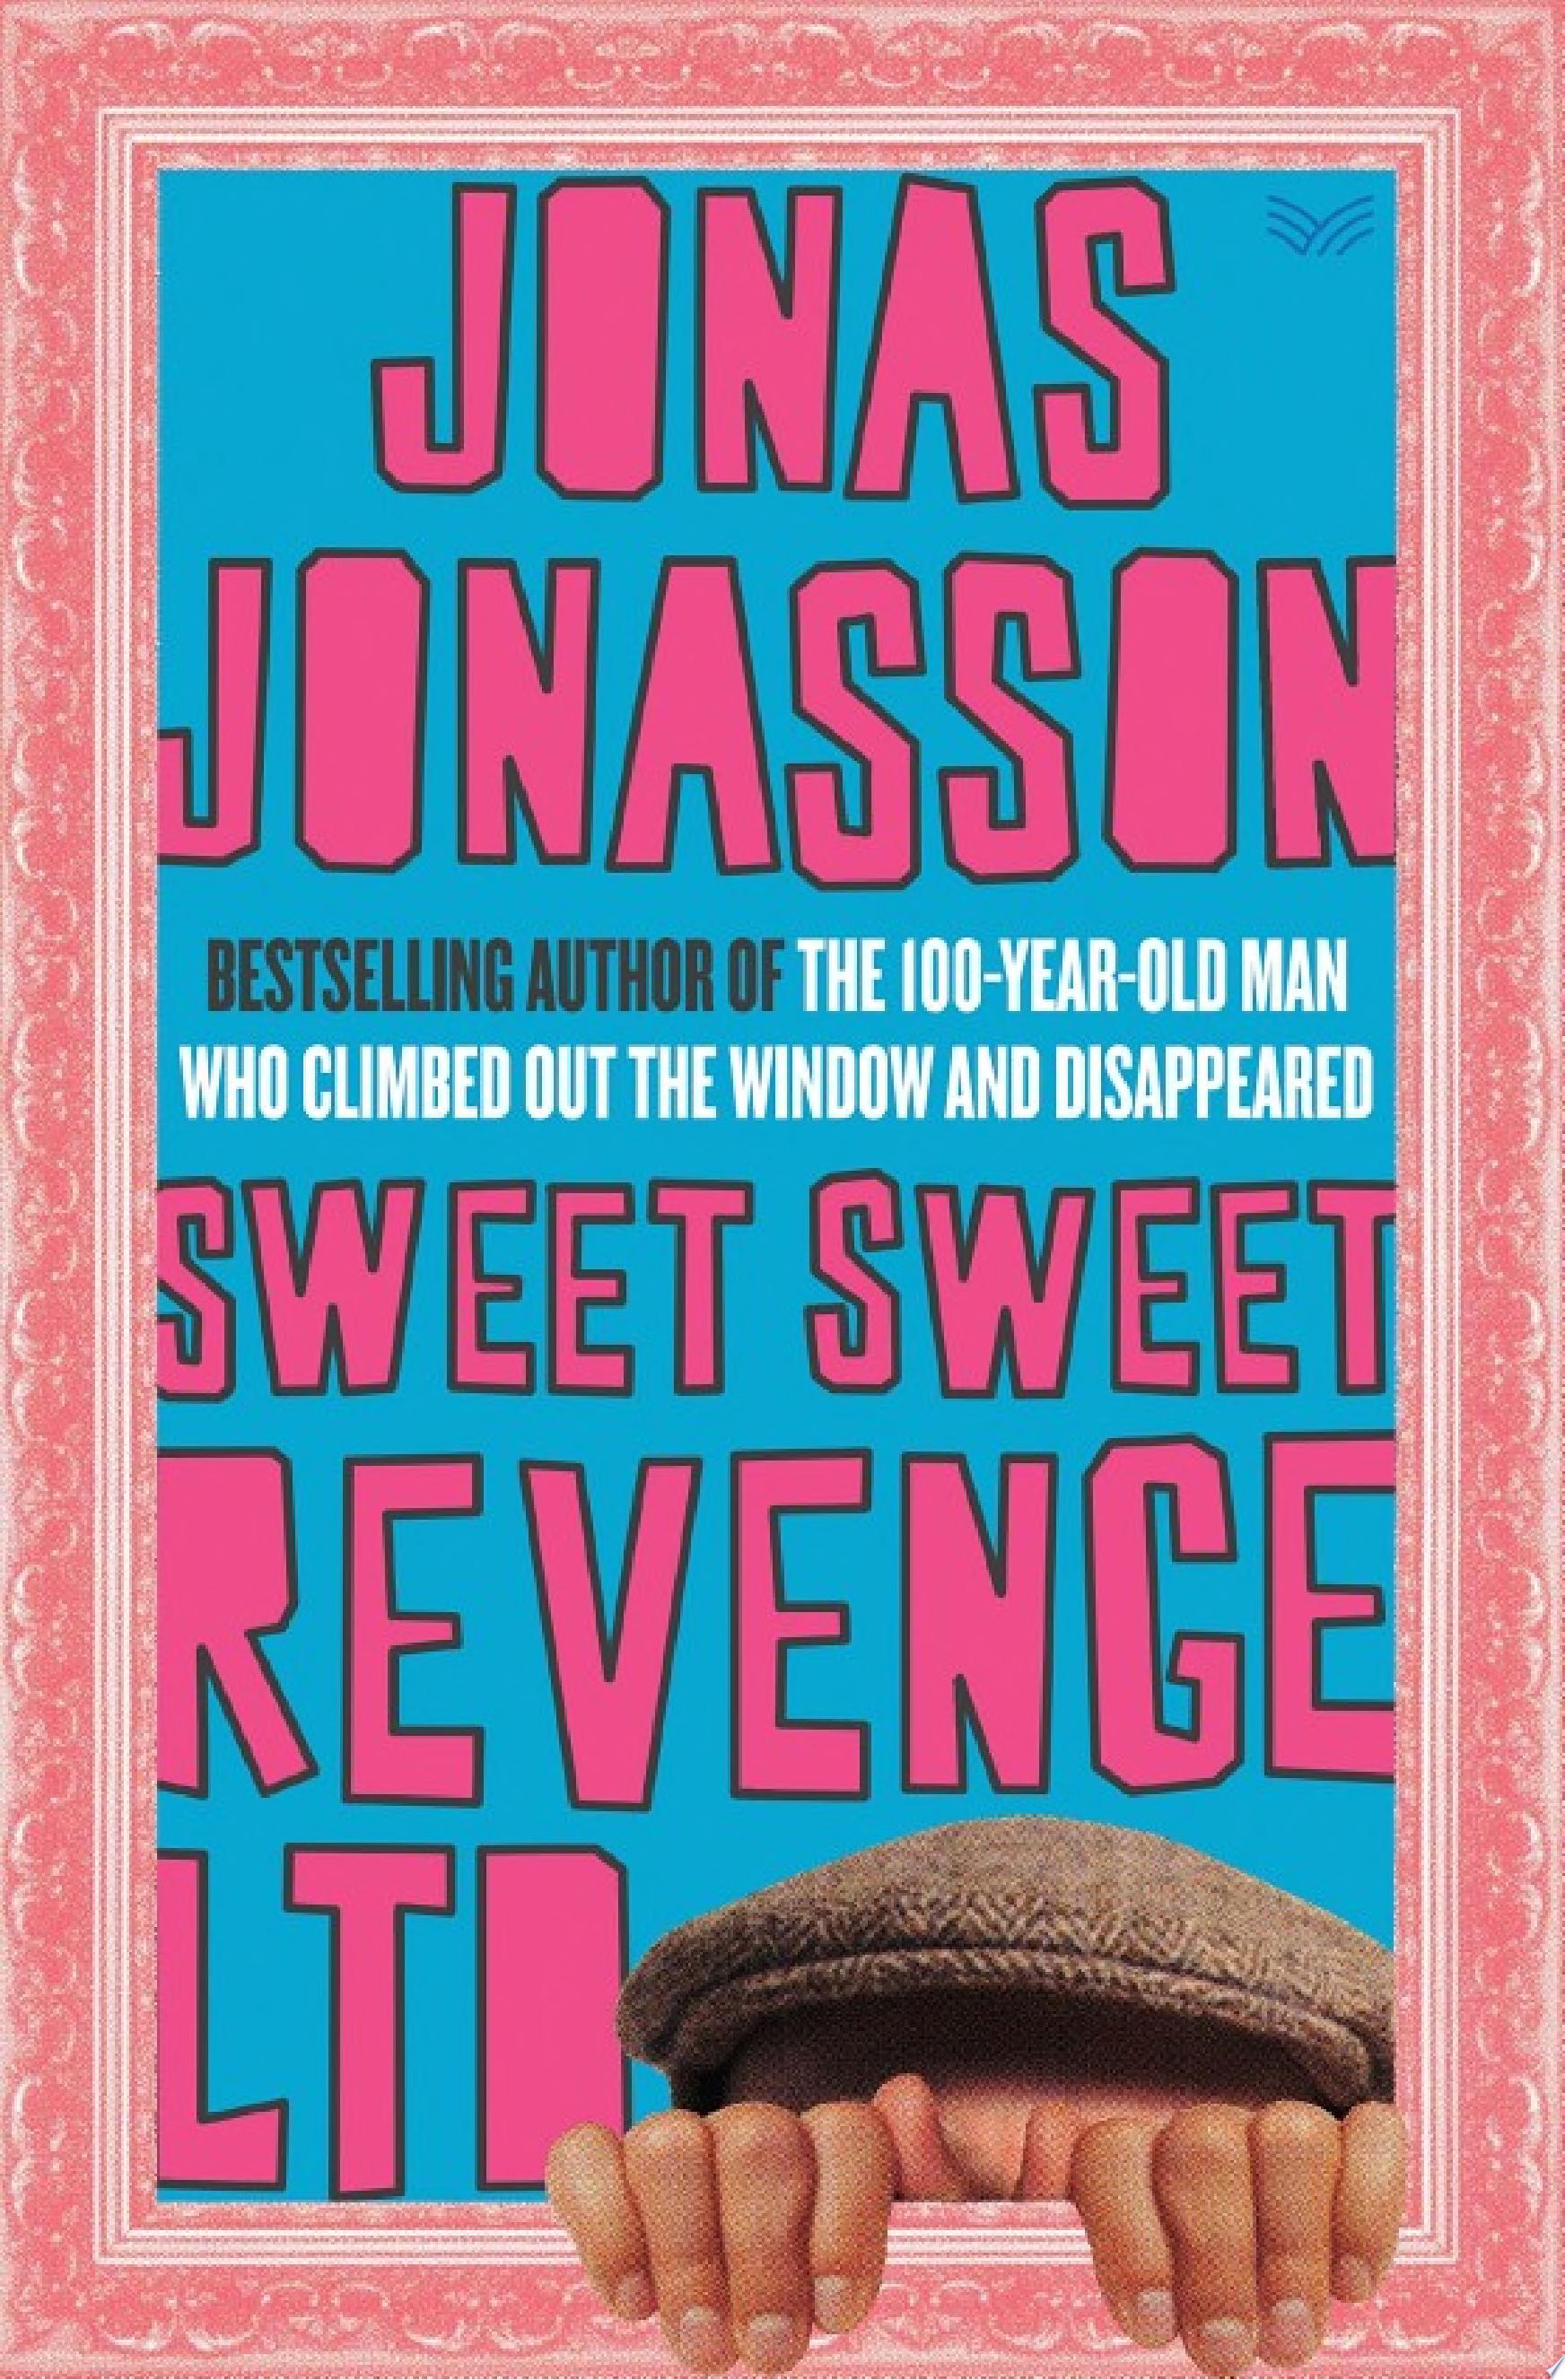 Image for "Sweet Sweet Revenge LTD"